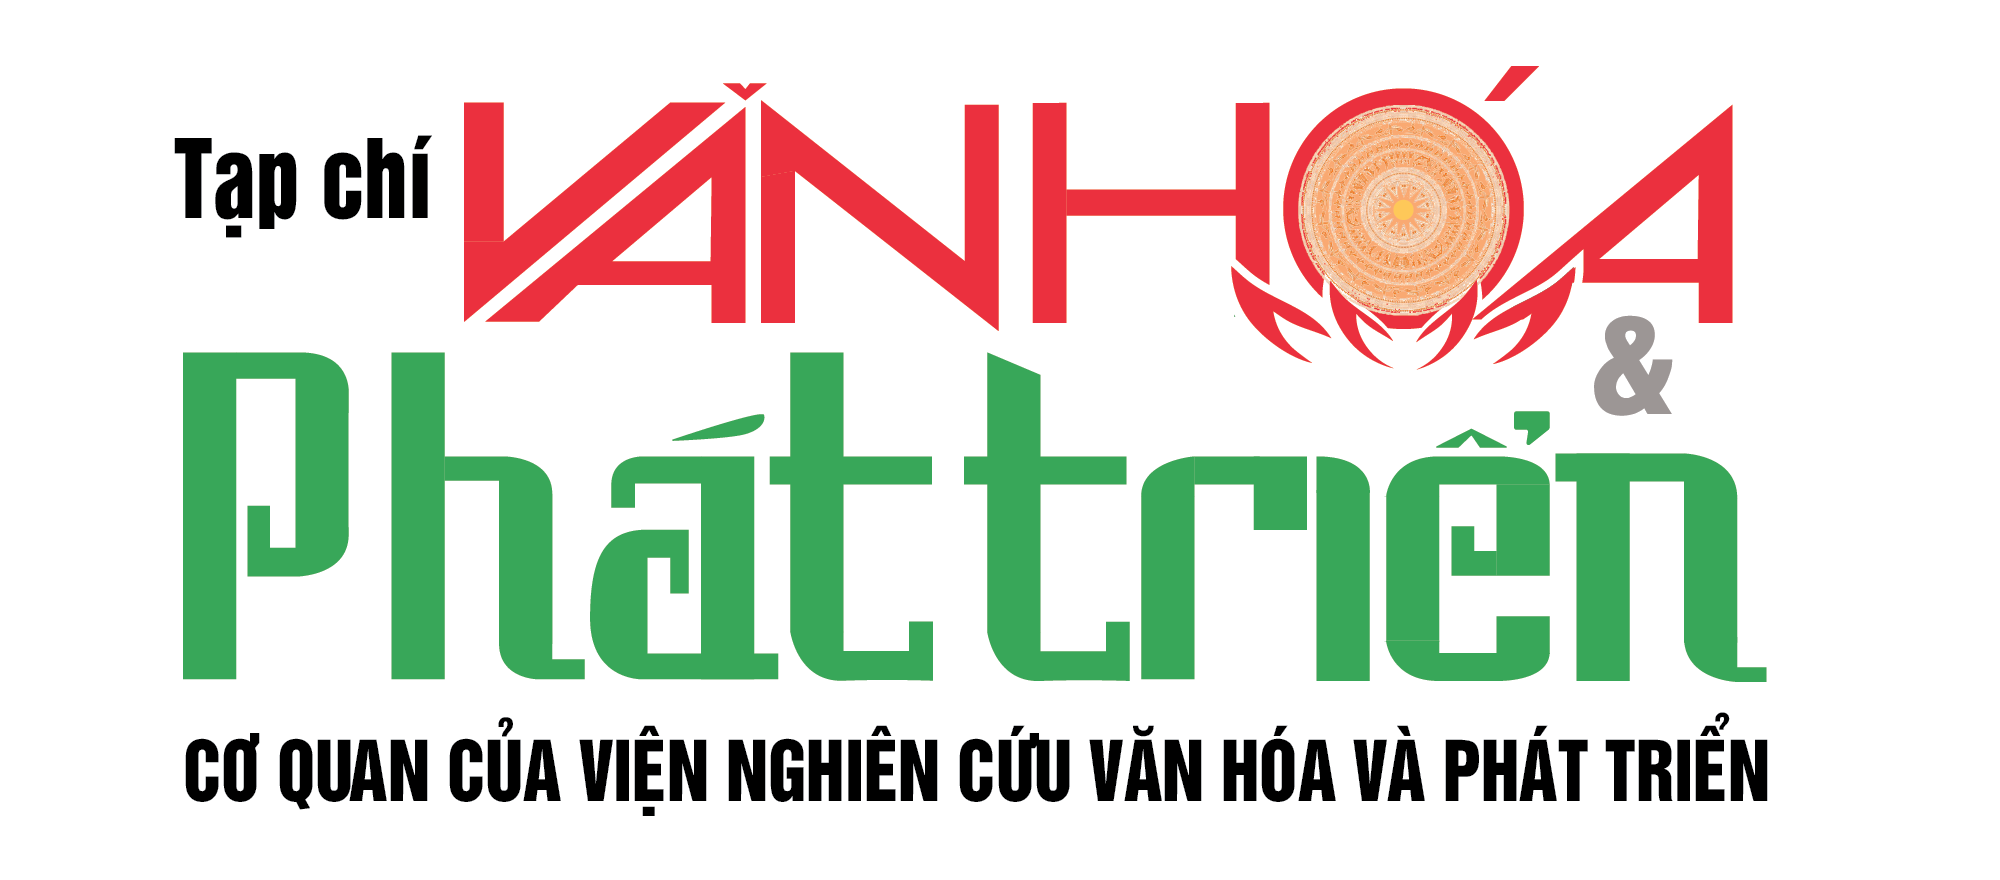 logo-van-hoa-phat-trien-1620826774-1640019640.png